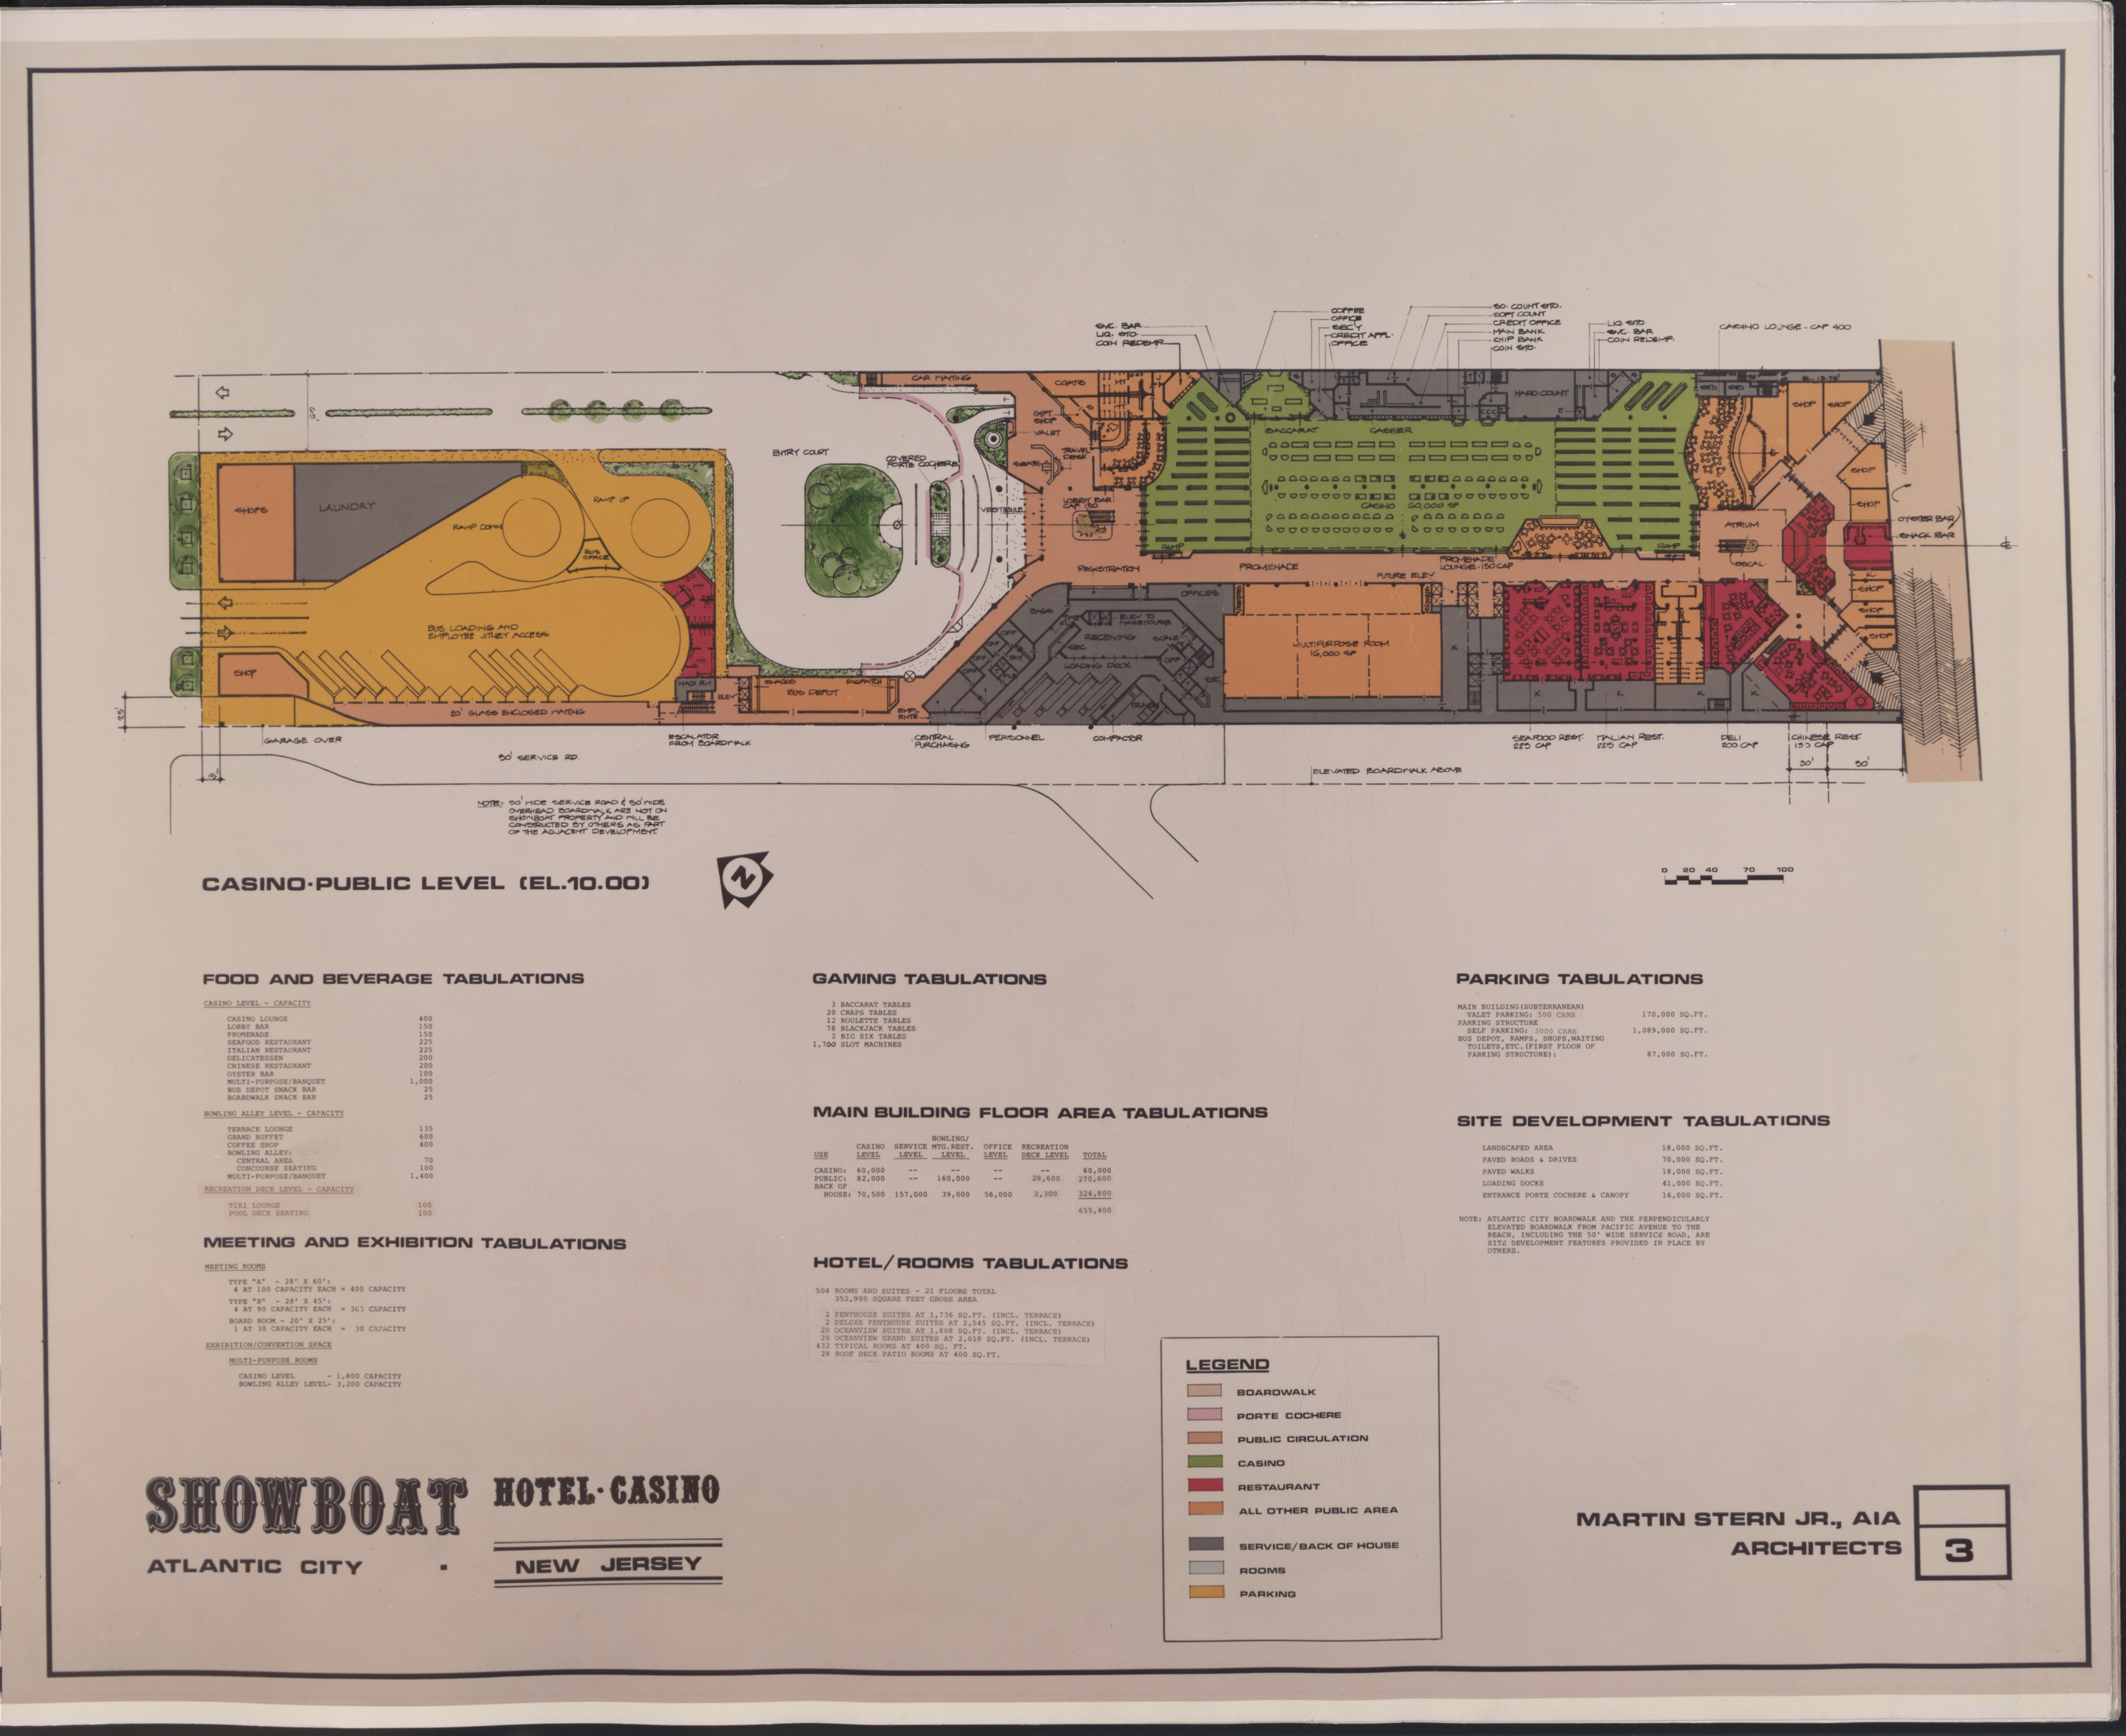 Atlantic City Showboat Hotel Casino Proposal, image 3